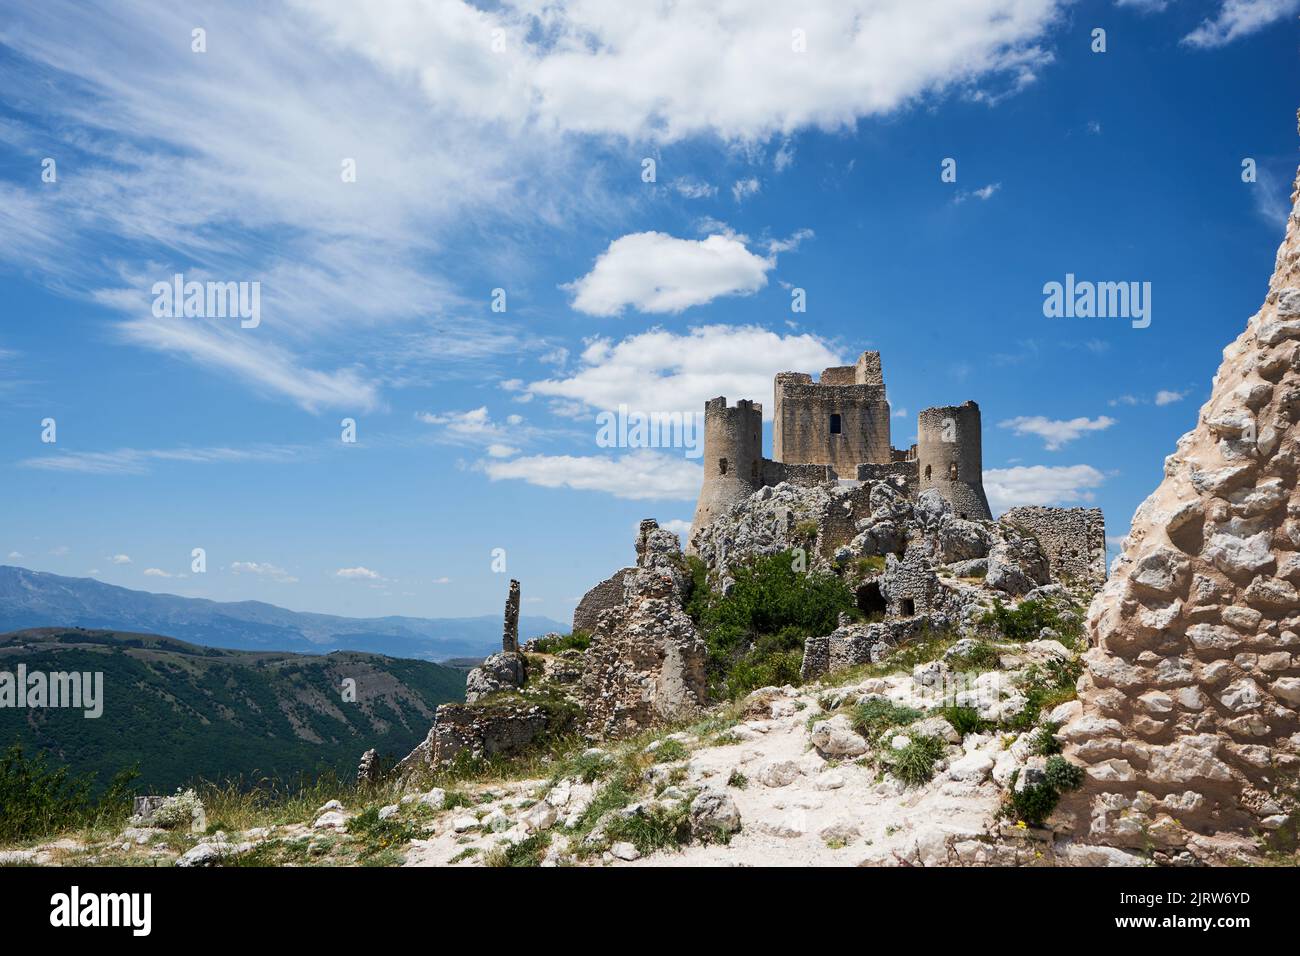 Burgruine Rocca Calascio, bei dem Bergdorf Calascio, Nationalpark Gran Sasso und Monti della Laga, Abruzzen, Provinz L’Aquila, Italien Stock Photo